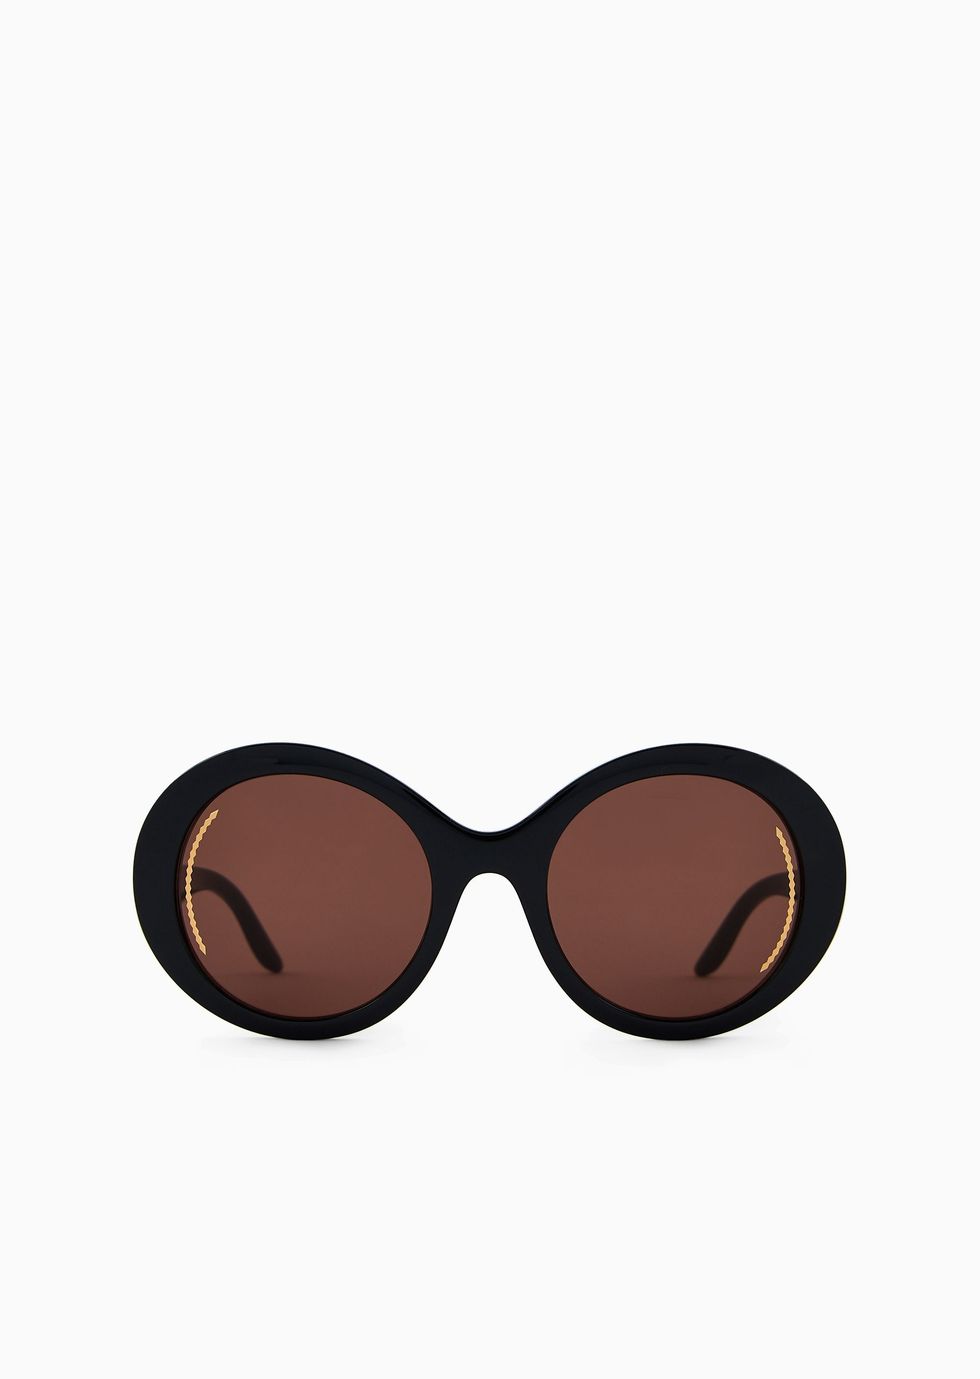 Maximalistas en diseño y tamaño: las gafas de sol XL son las